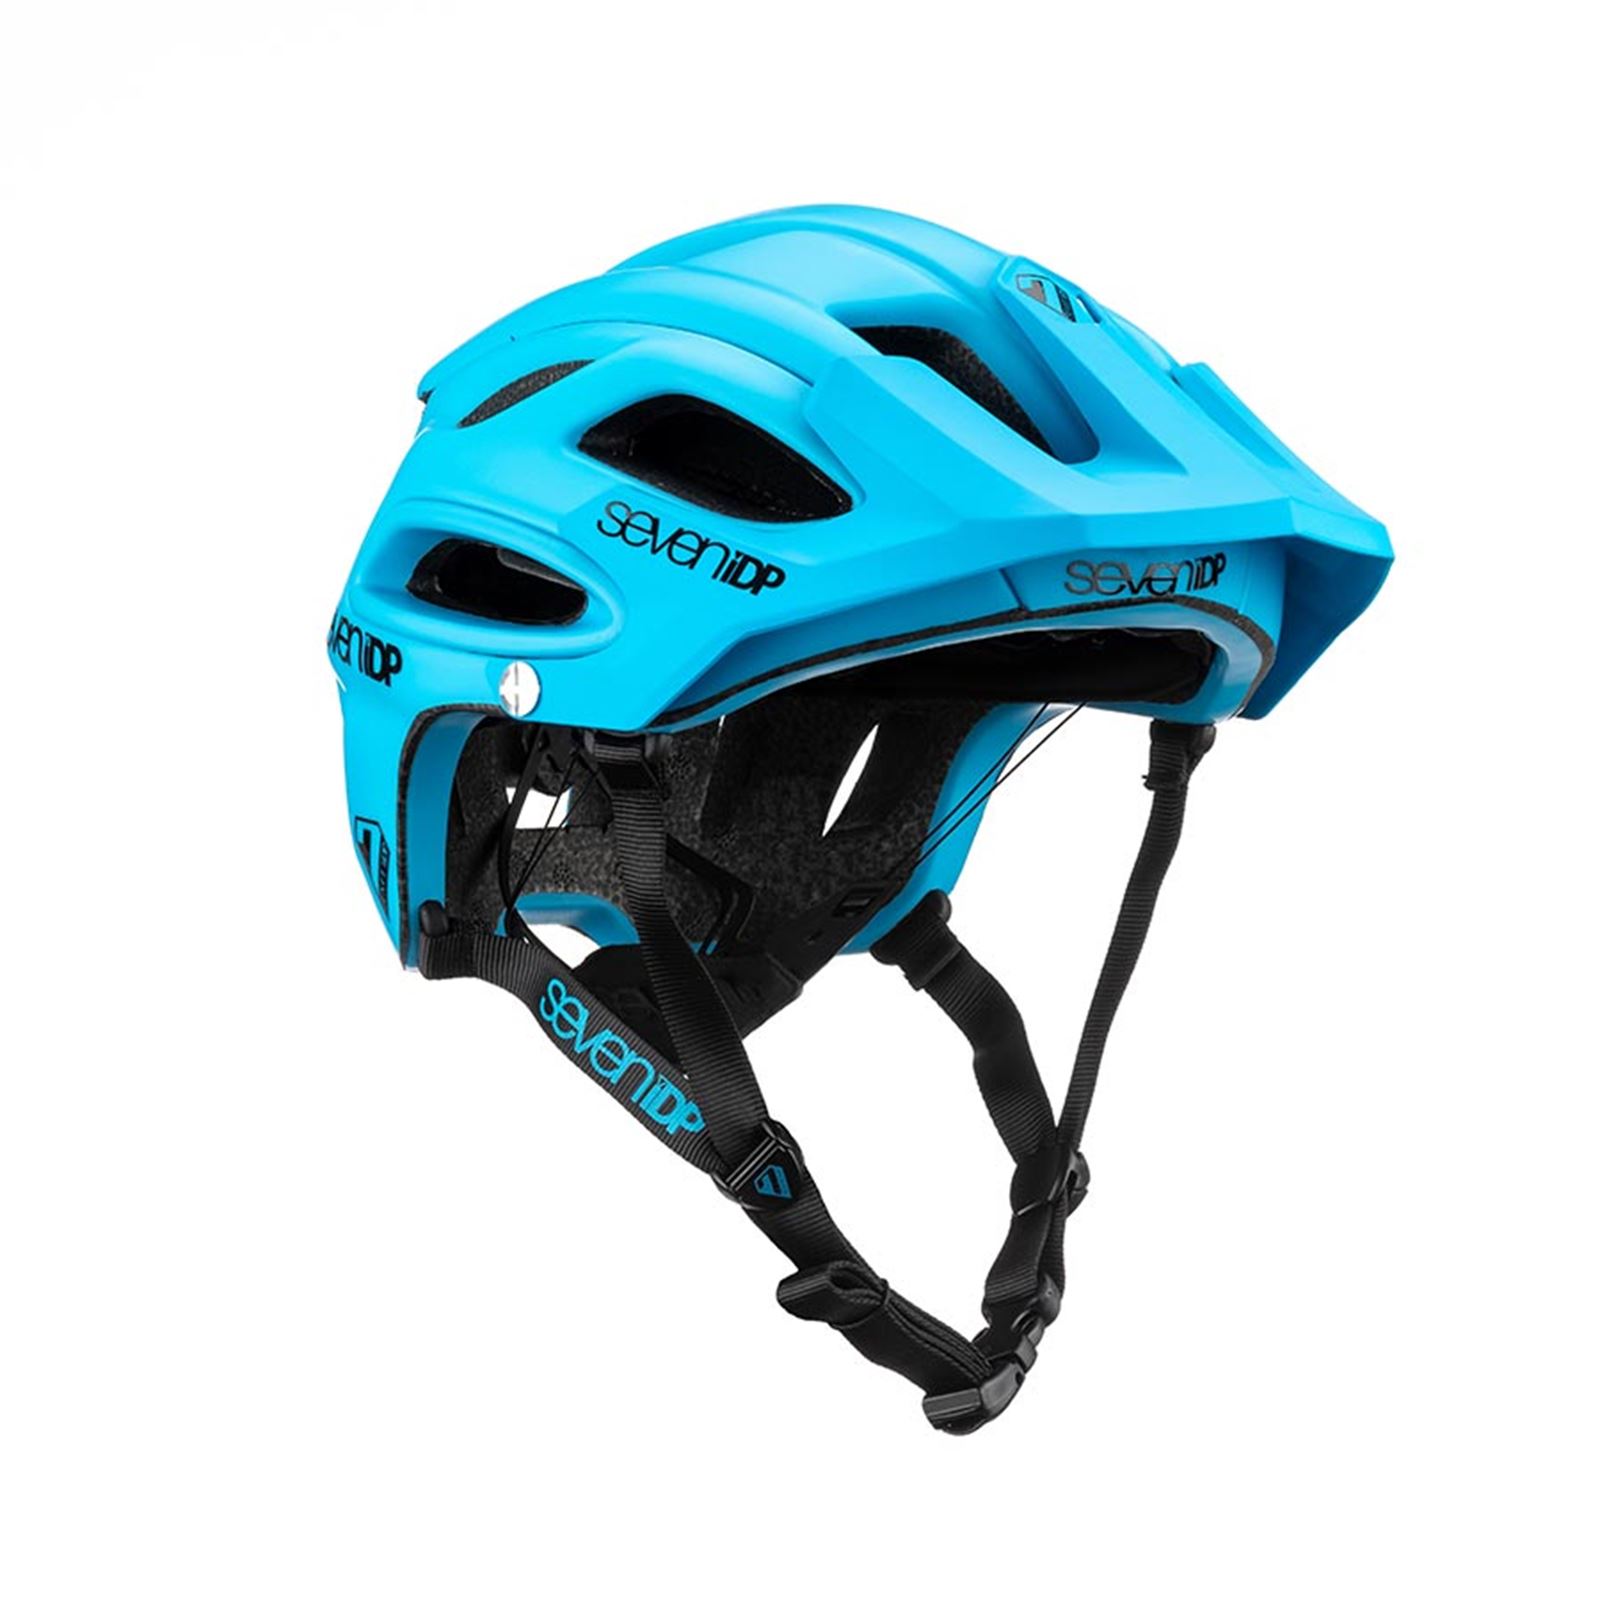 7iDP M2 Helmet - Matte Blue - XSS 52 - 55cm 